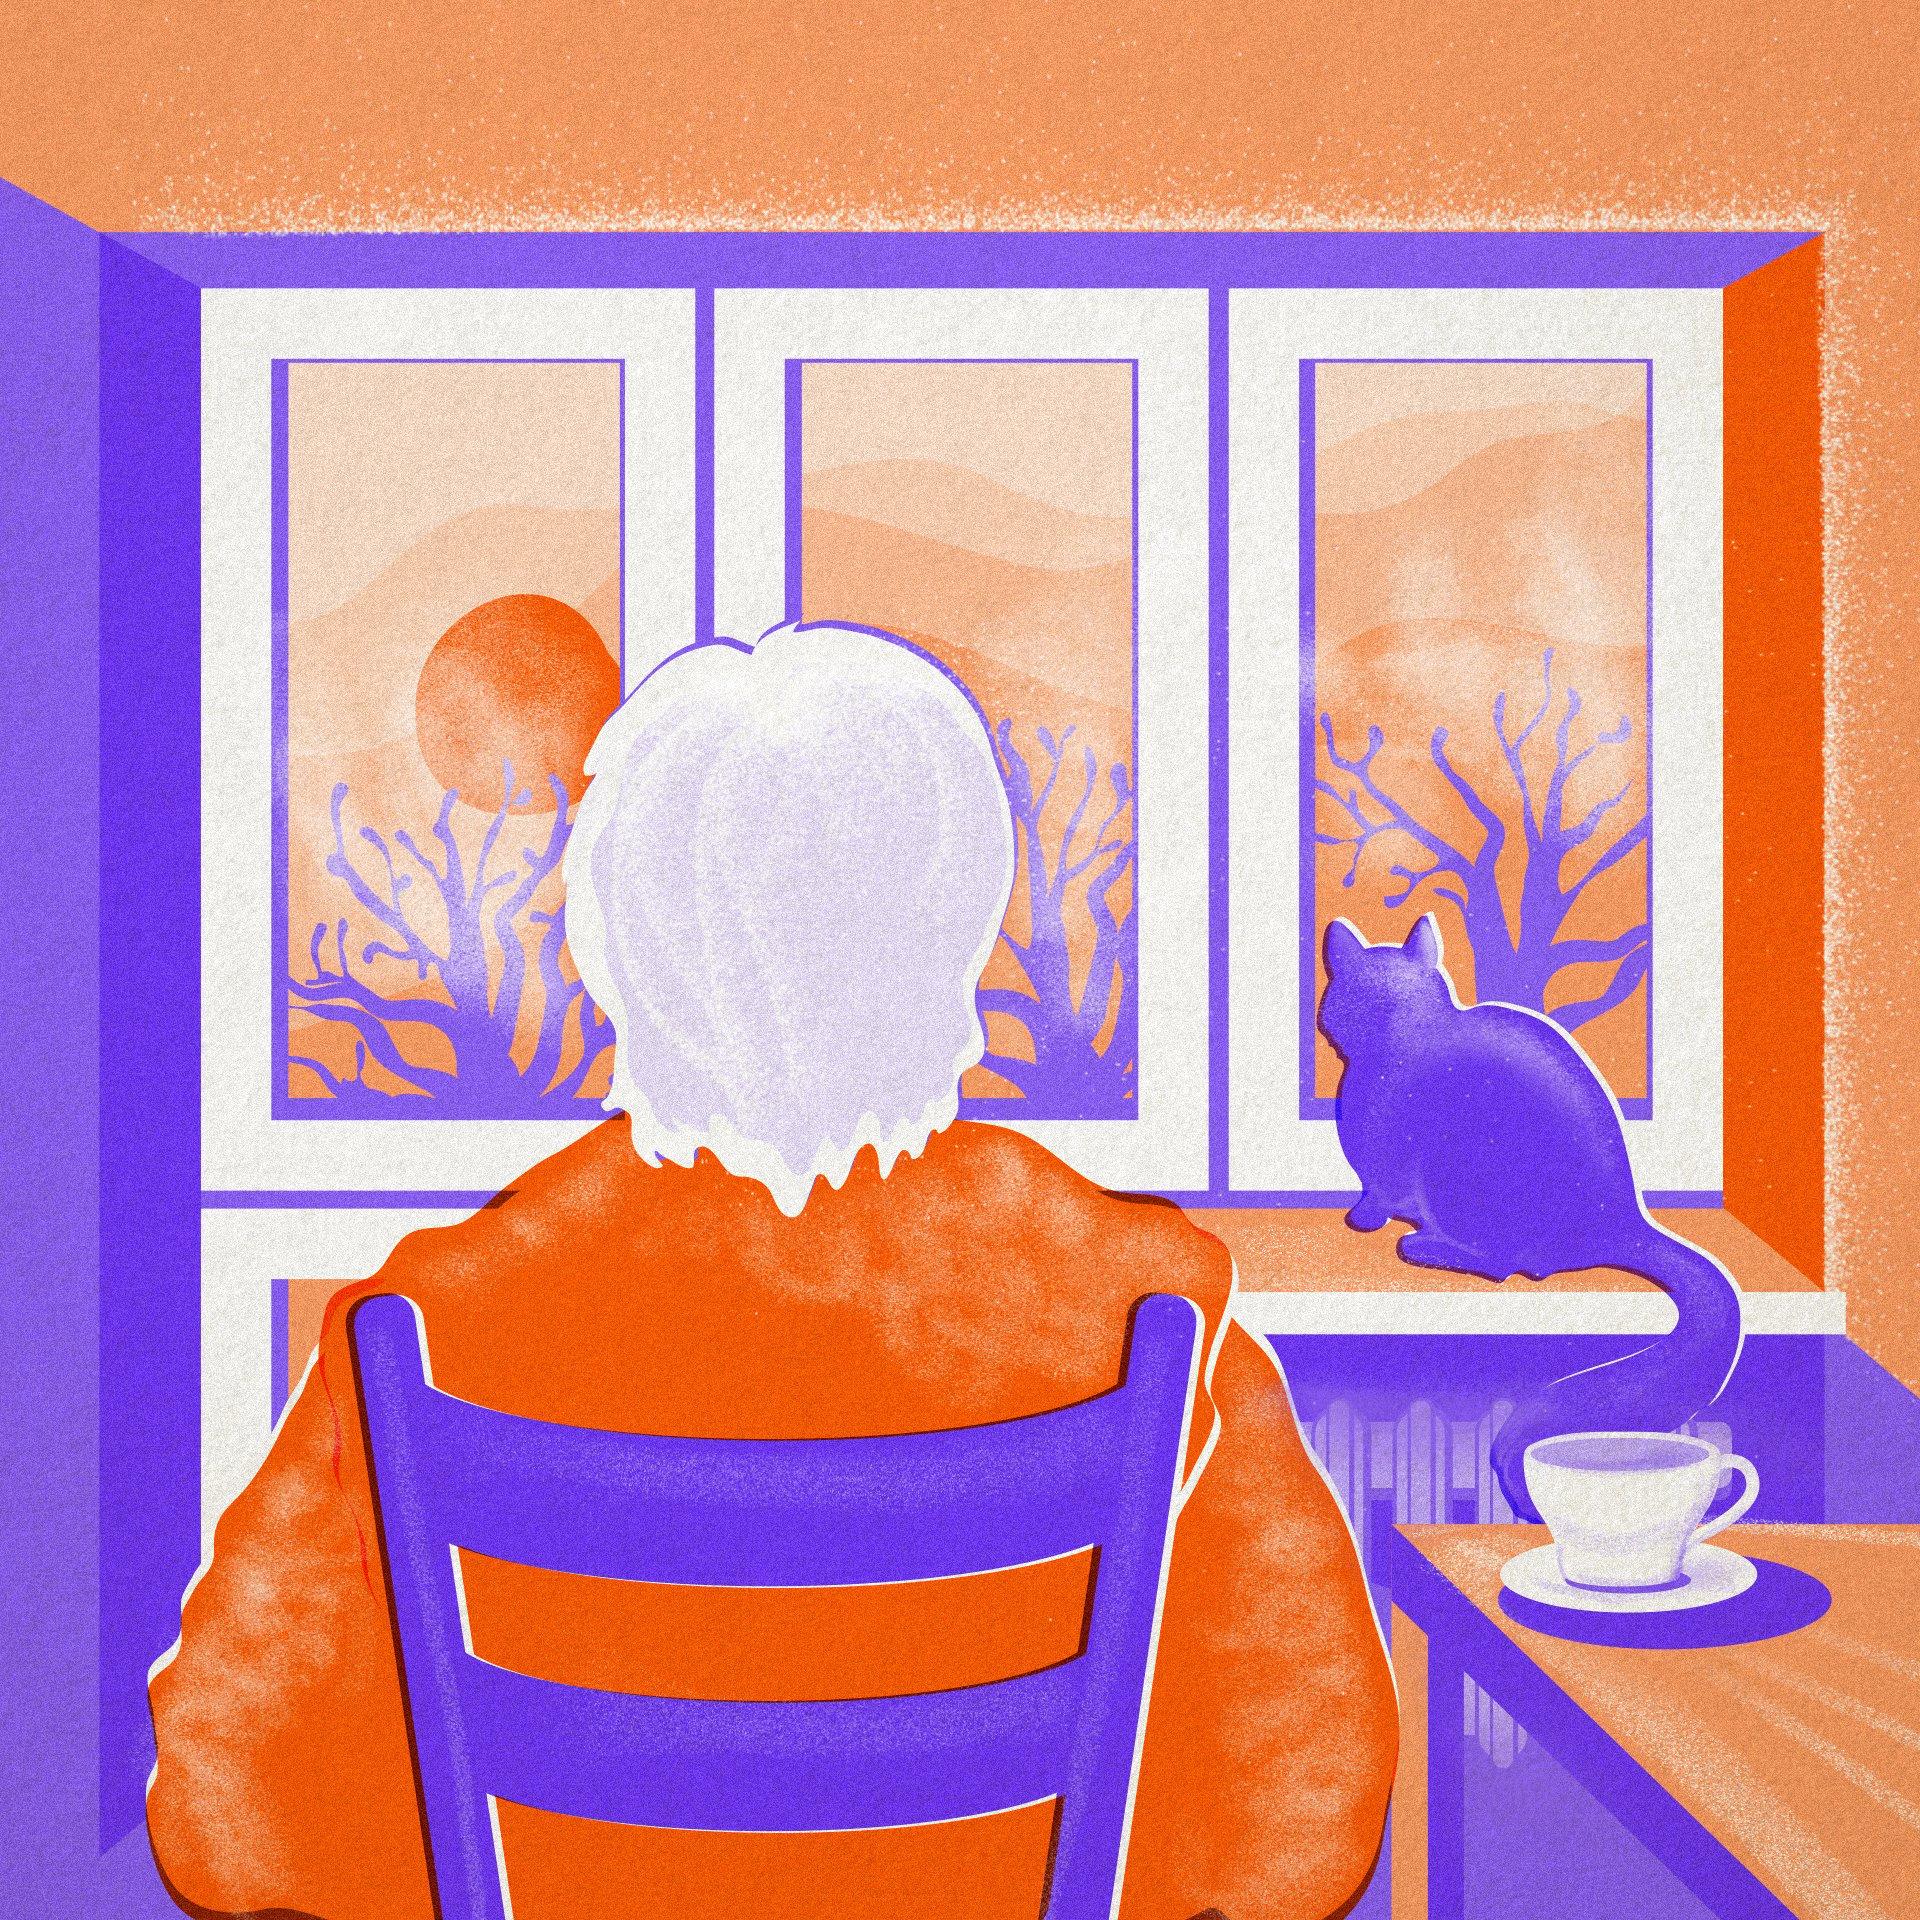 Pomarańczowo-niebieska grafika: siwa kobieta patrzy przez okno. Na parapecie kot